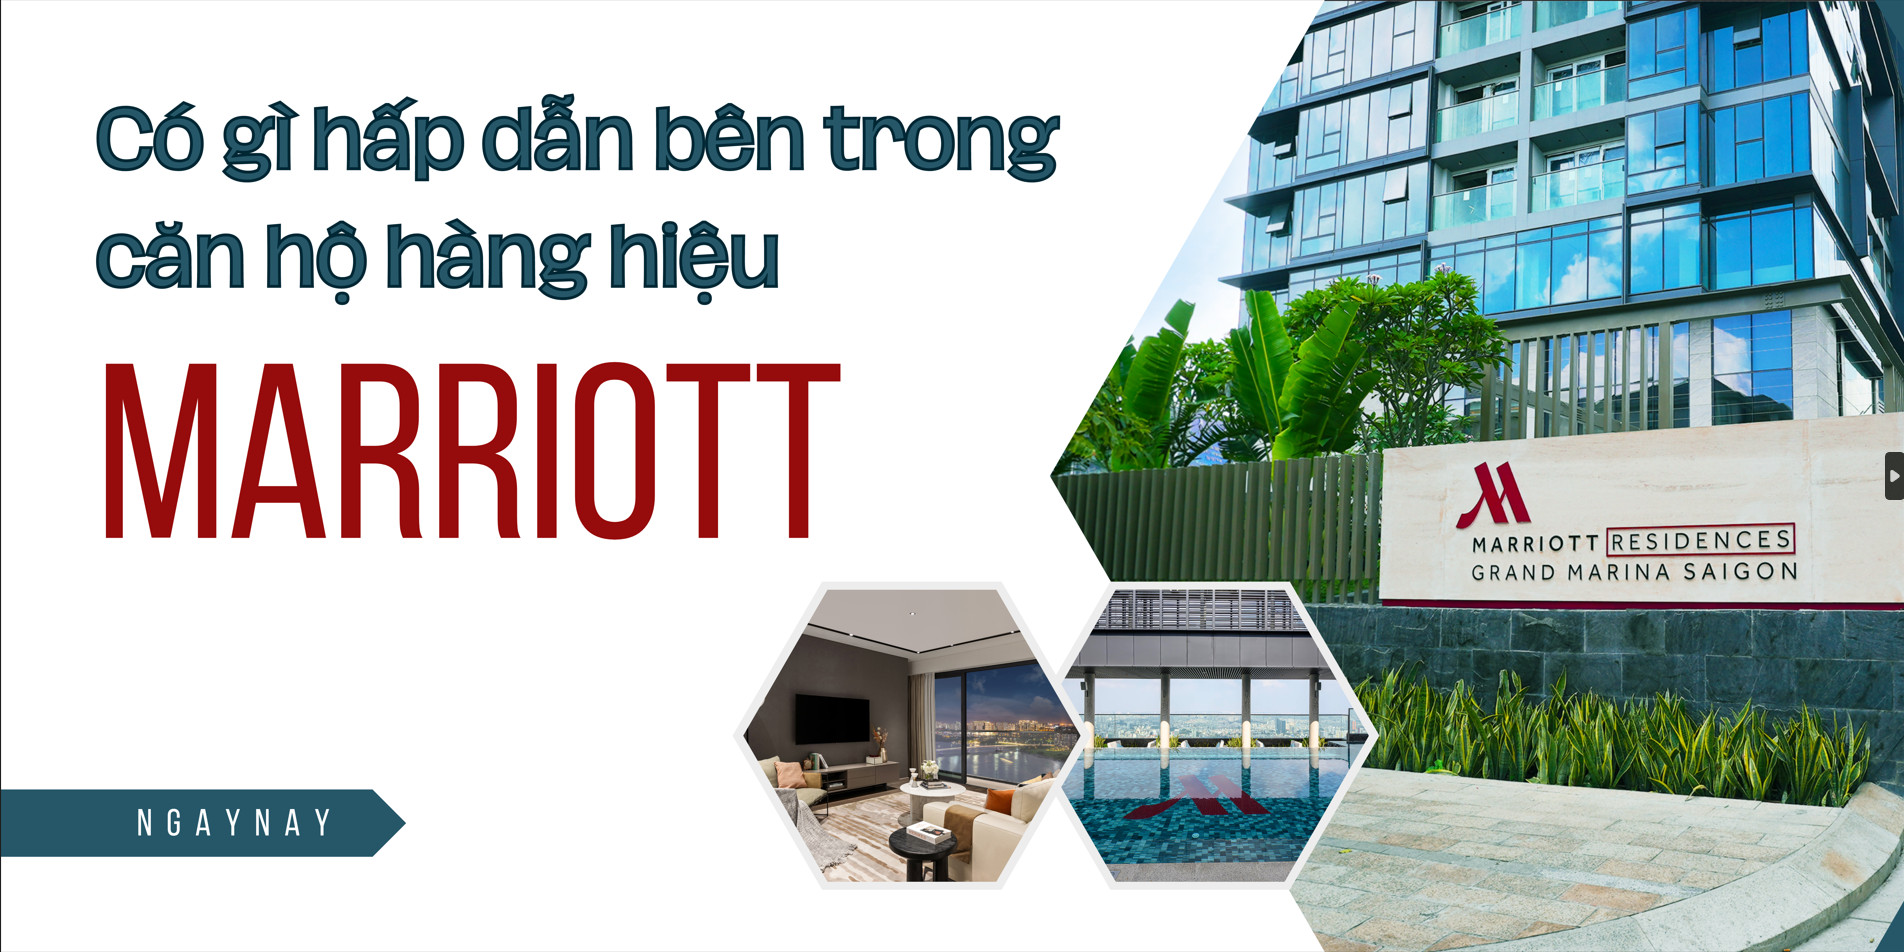 Có gì hấp dẫn bên trong căn hộ hàng hiệu Marriott?